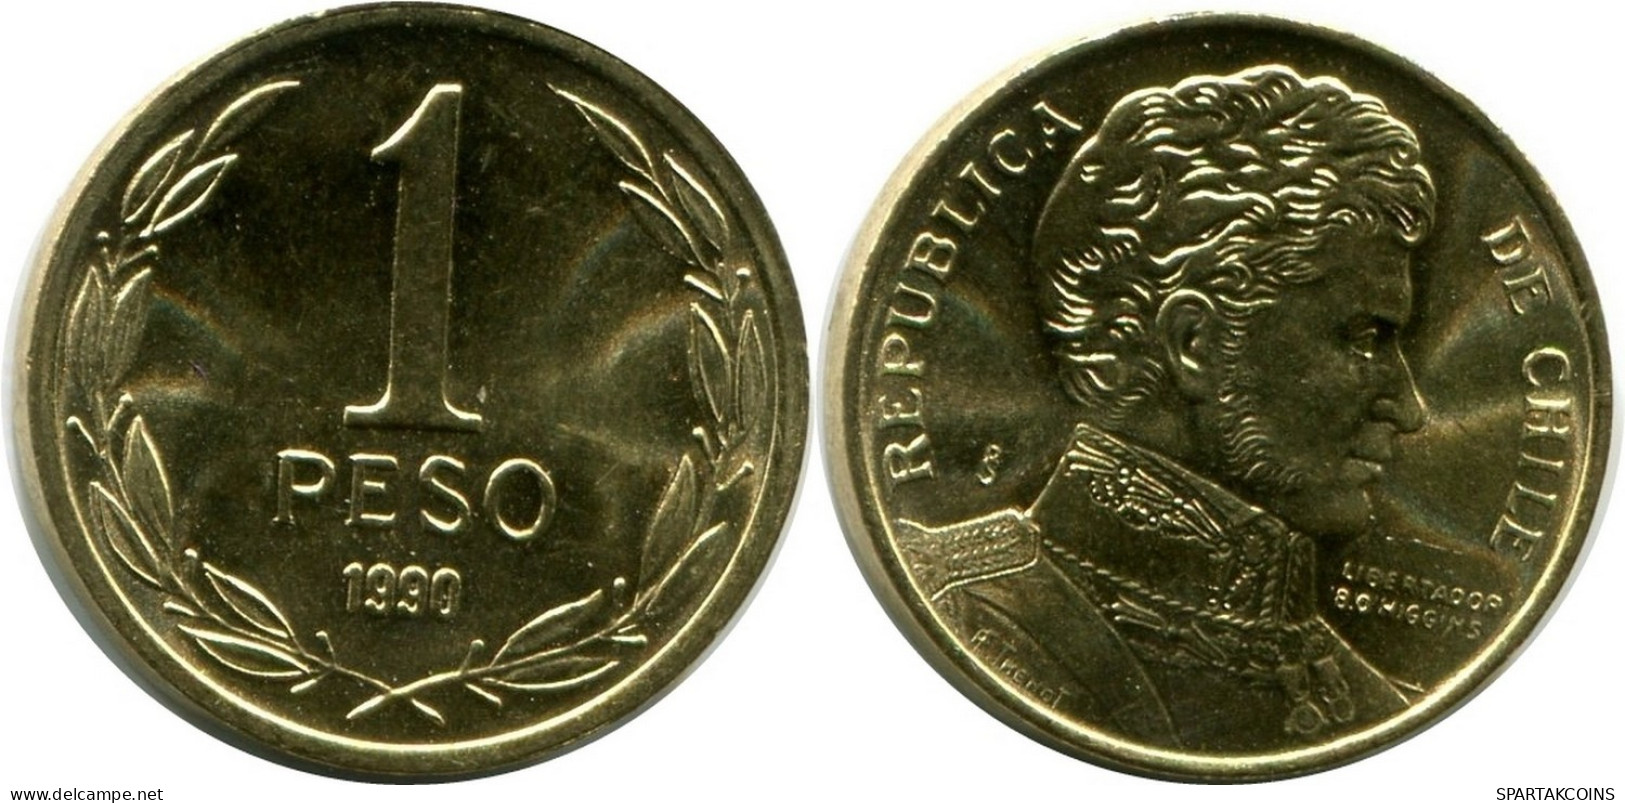 1 PESO 1990 CHILE UNC Coin #M10134.U.A - Chile